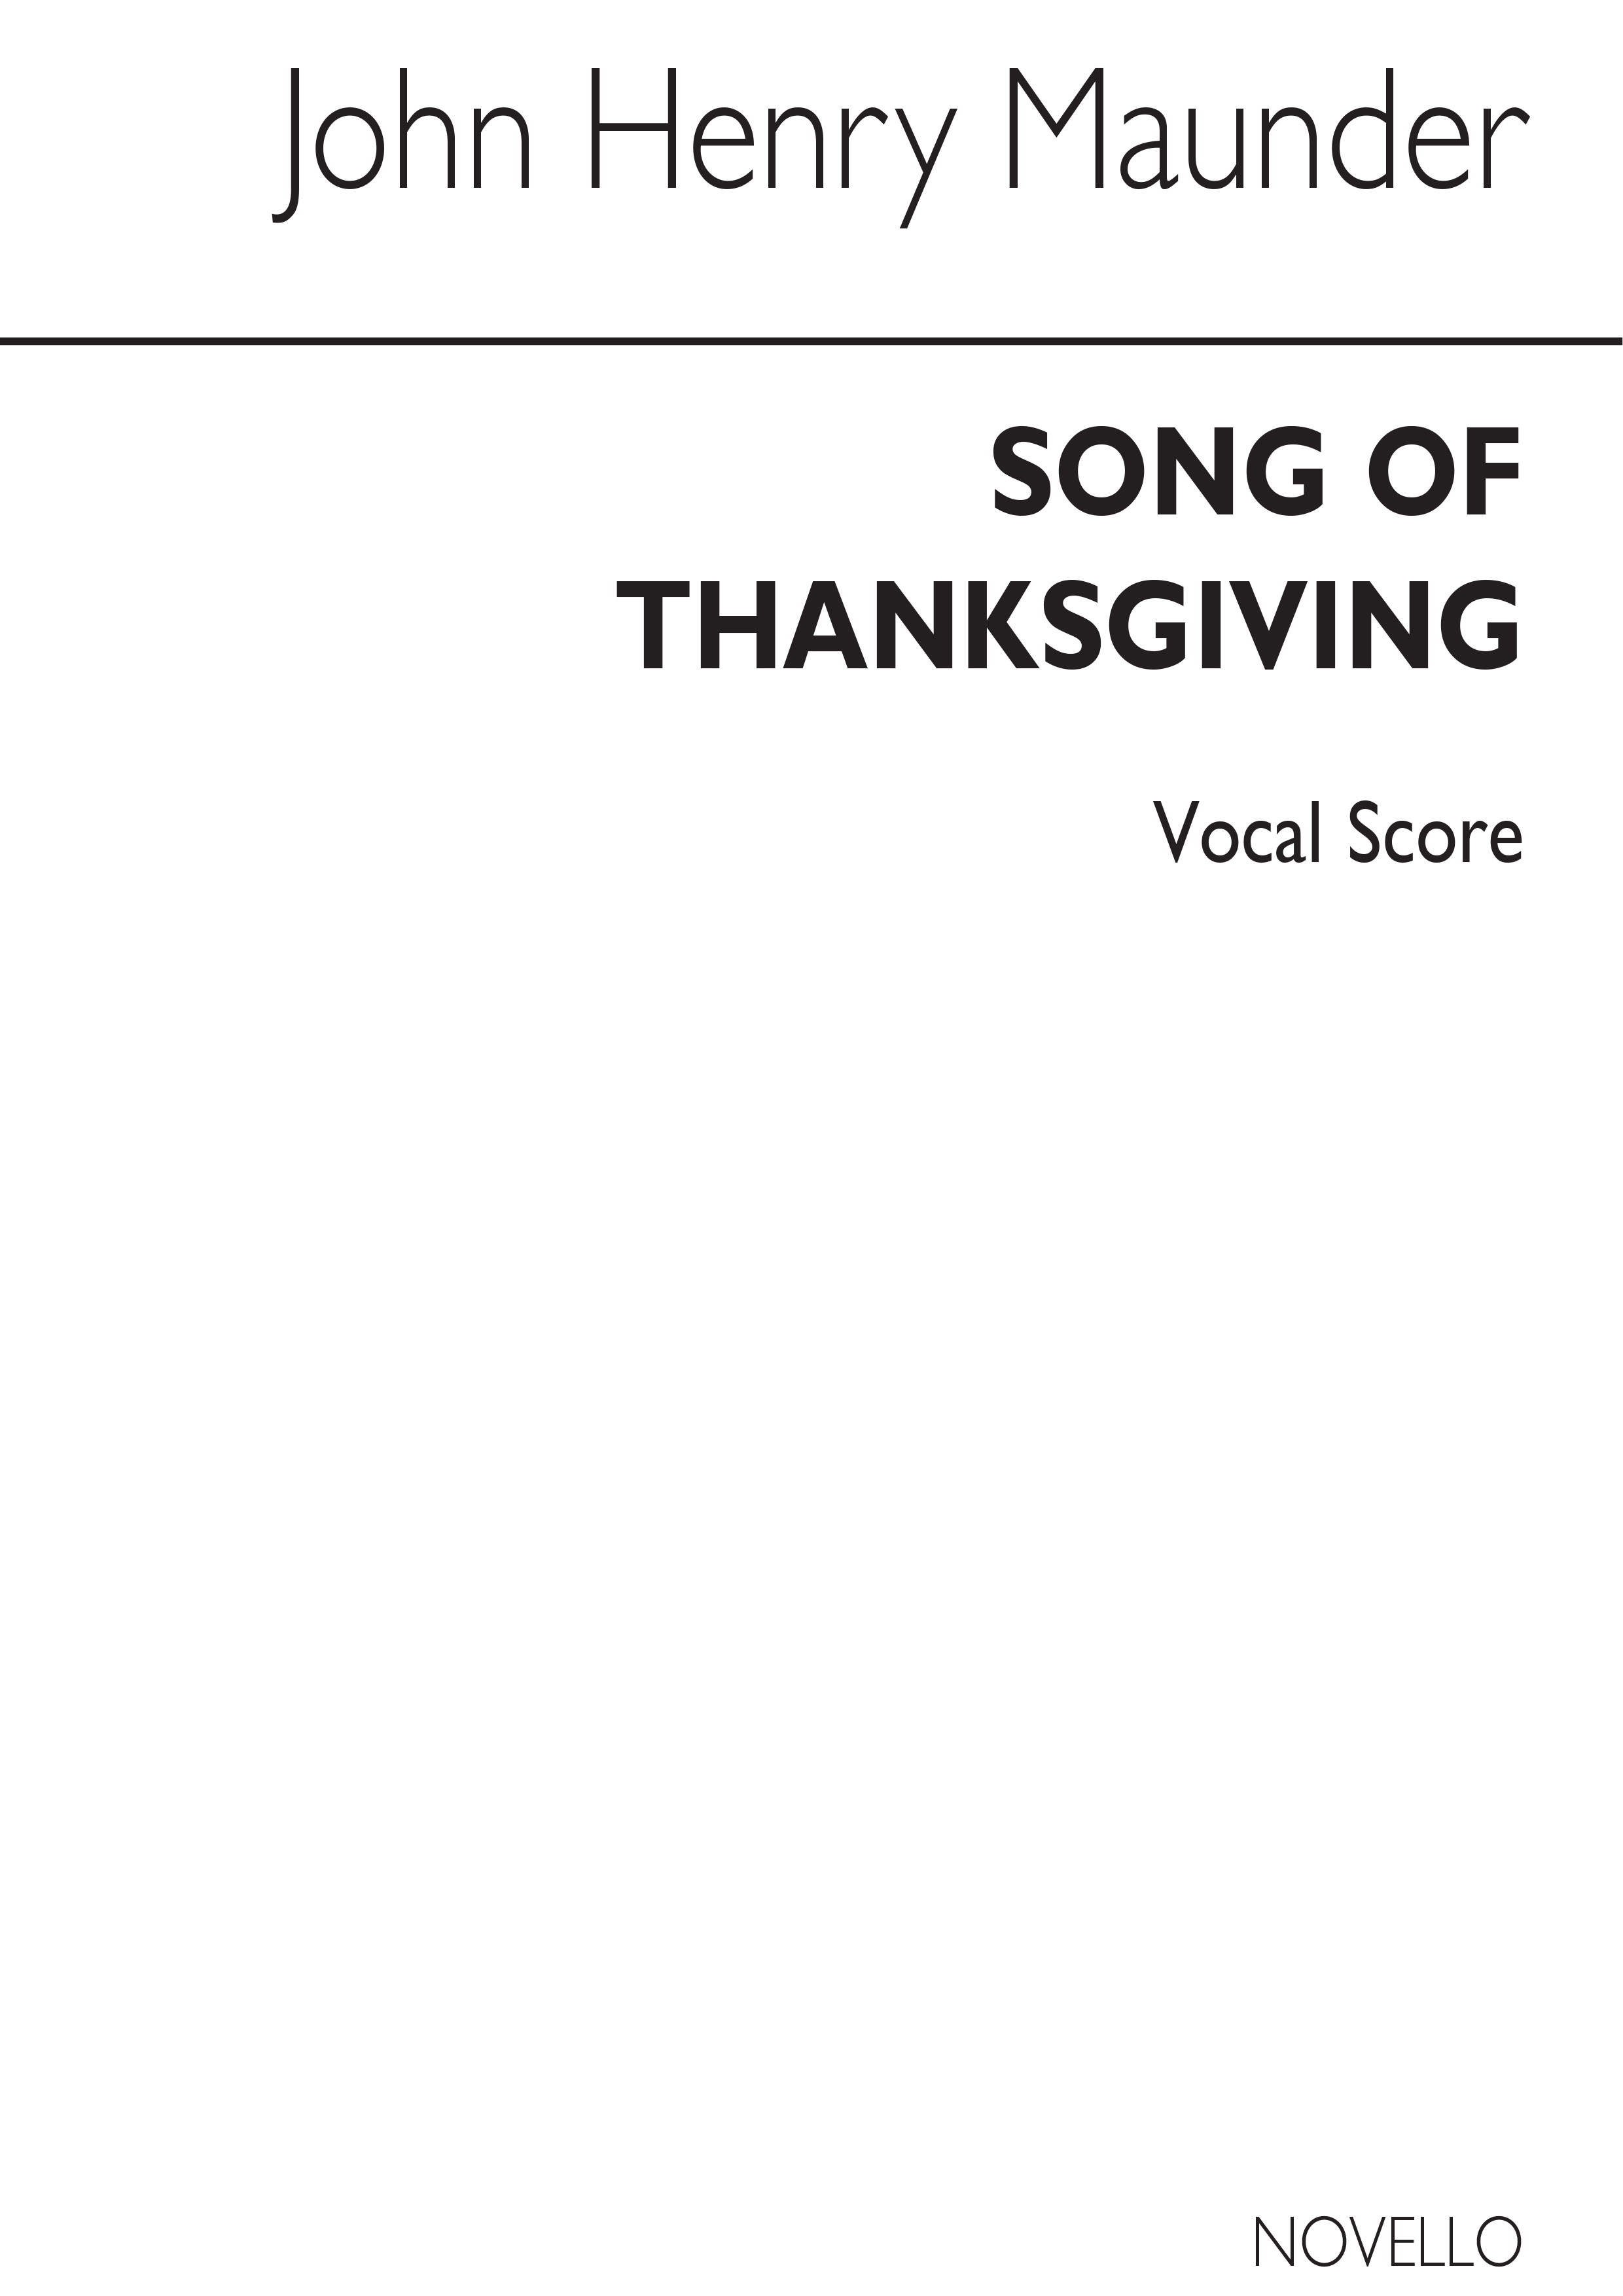 John Henry Maunder: Song Of Thanksgiving